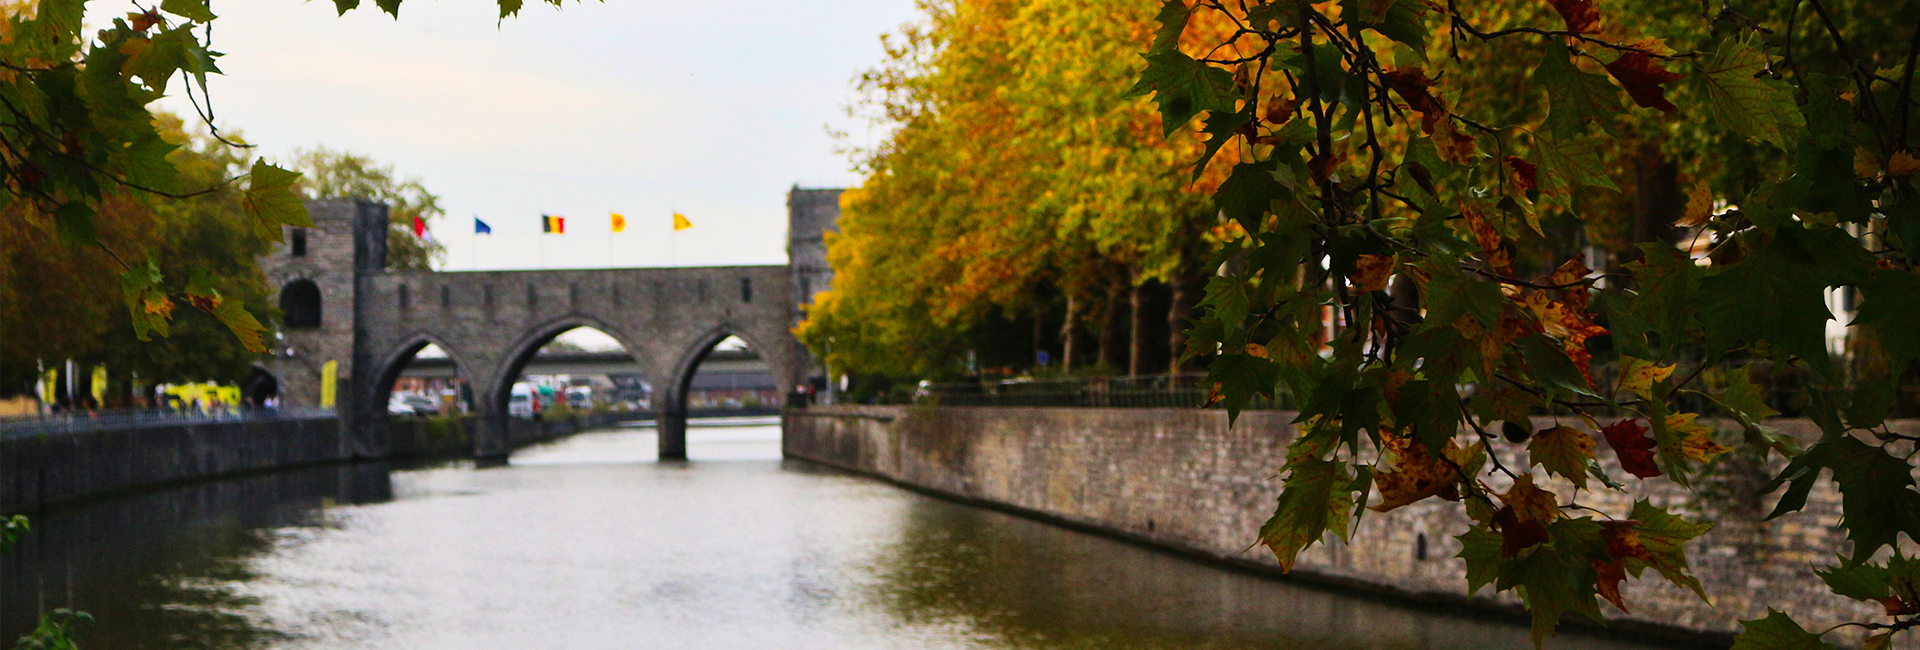 Pont des trous, Tournai by Coffee Lab Pics